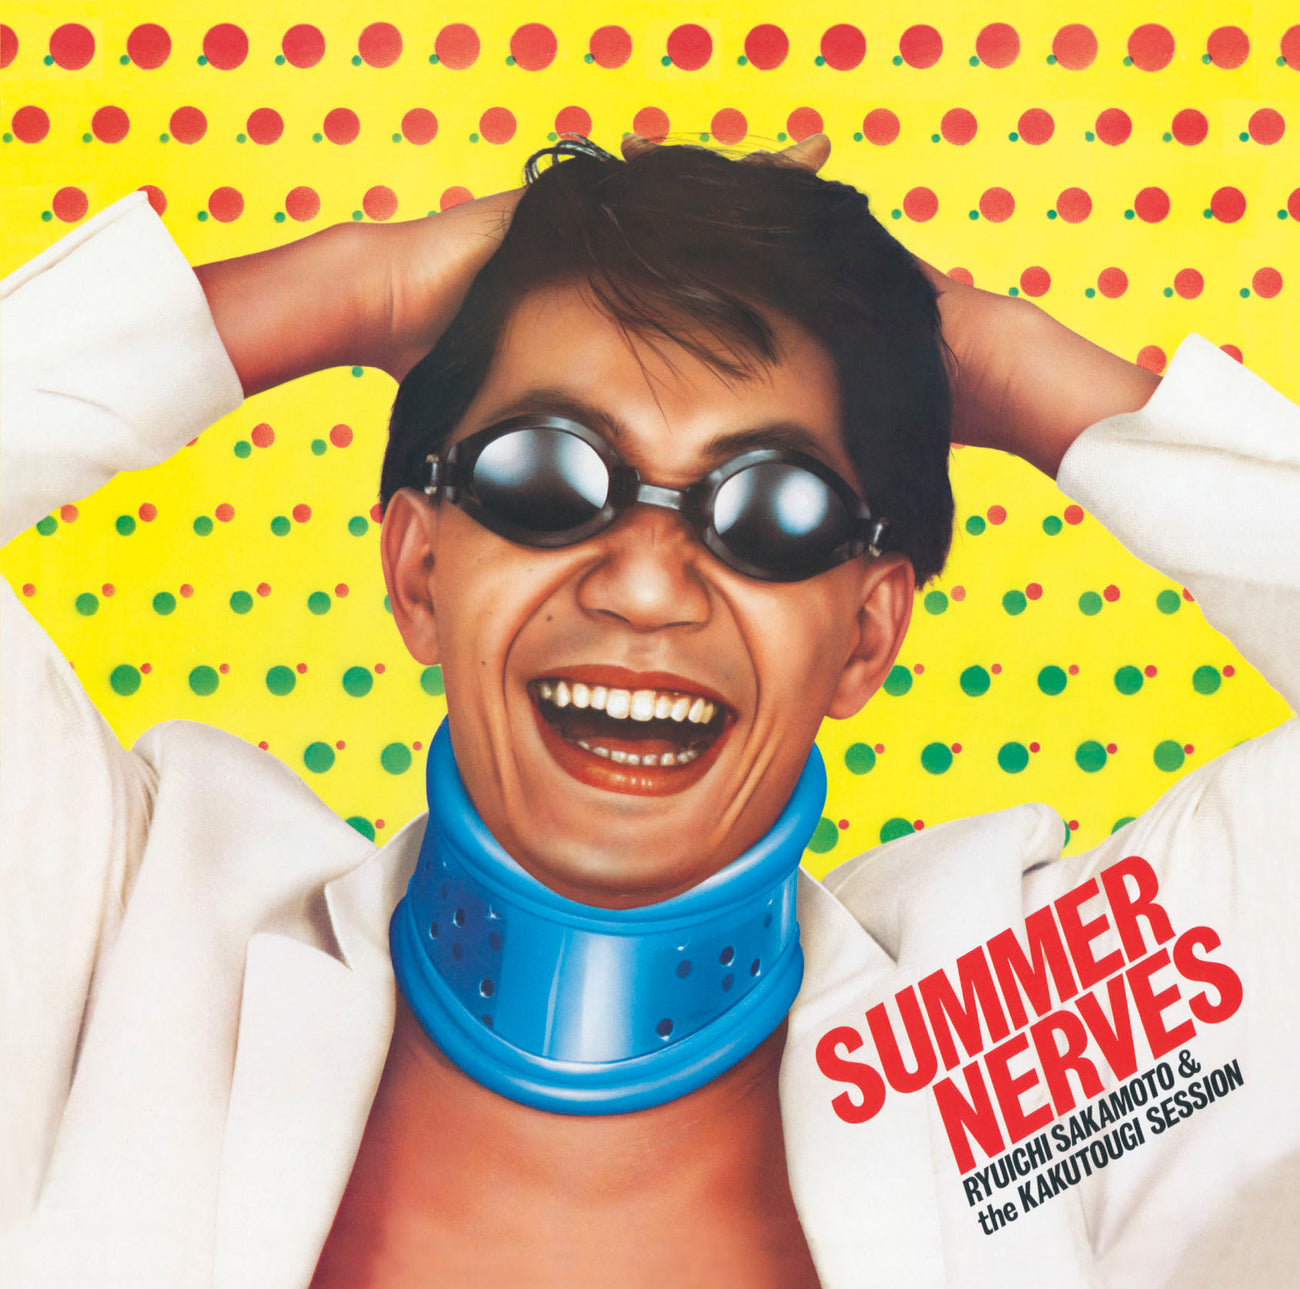 Summer Nerves by Ryuichi Sakamoto & The Kakutougi Session - Helix Sounds